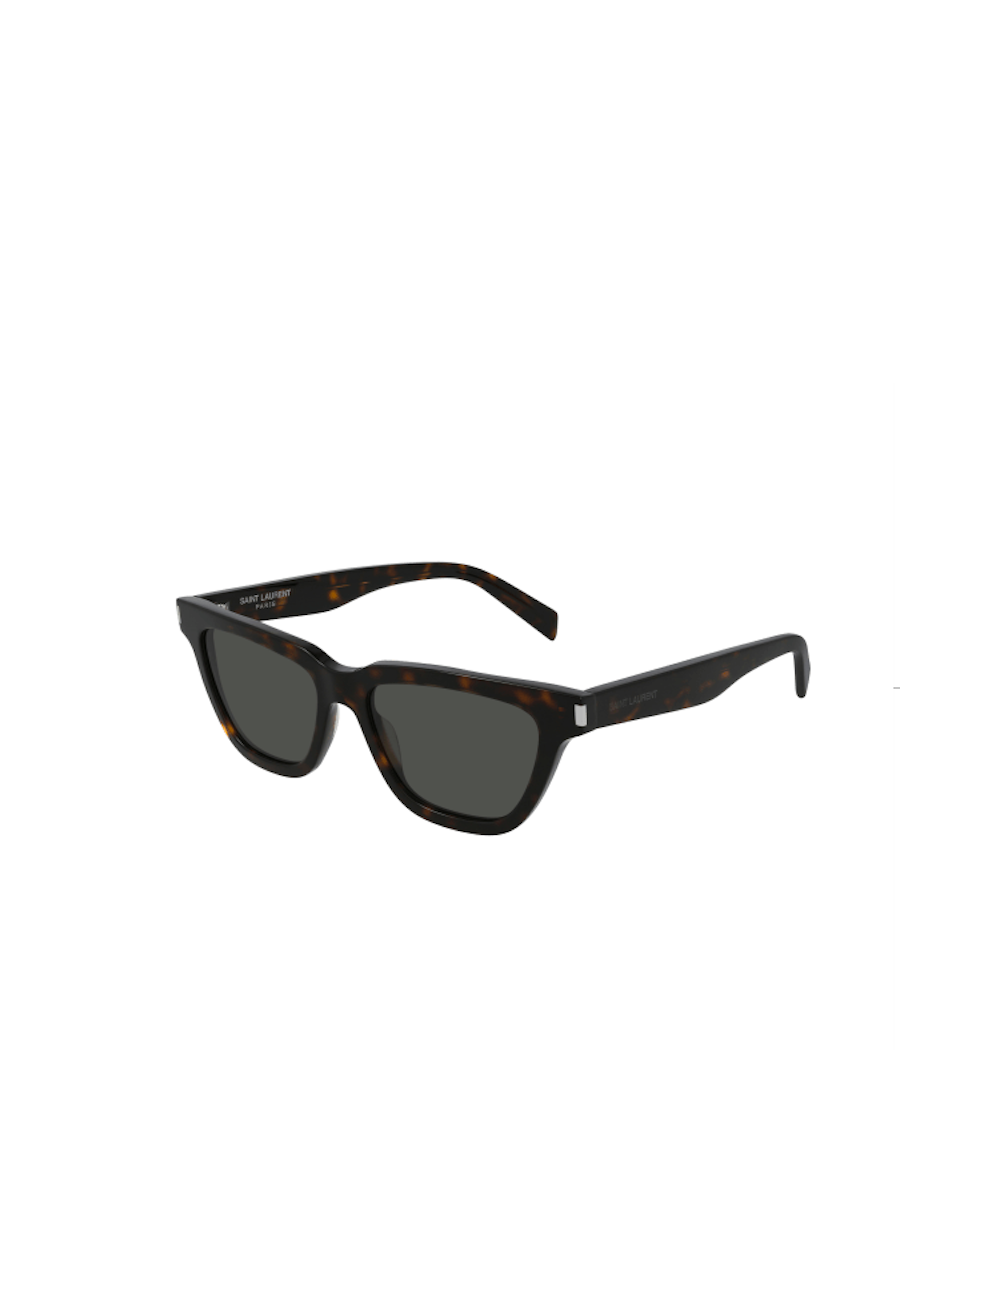 Saint Laurent SL 462 SULPICE 008 unisex sunglasses – Ottica Mauro